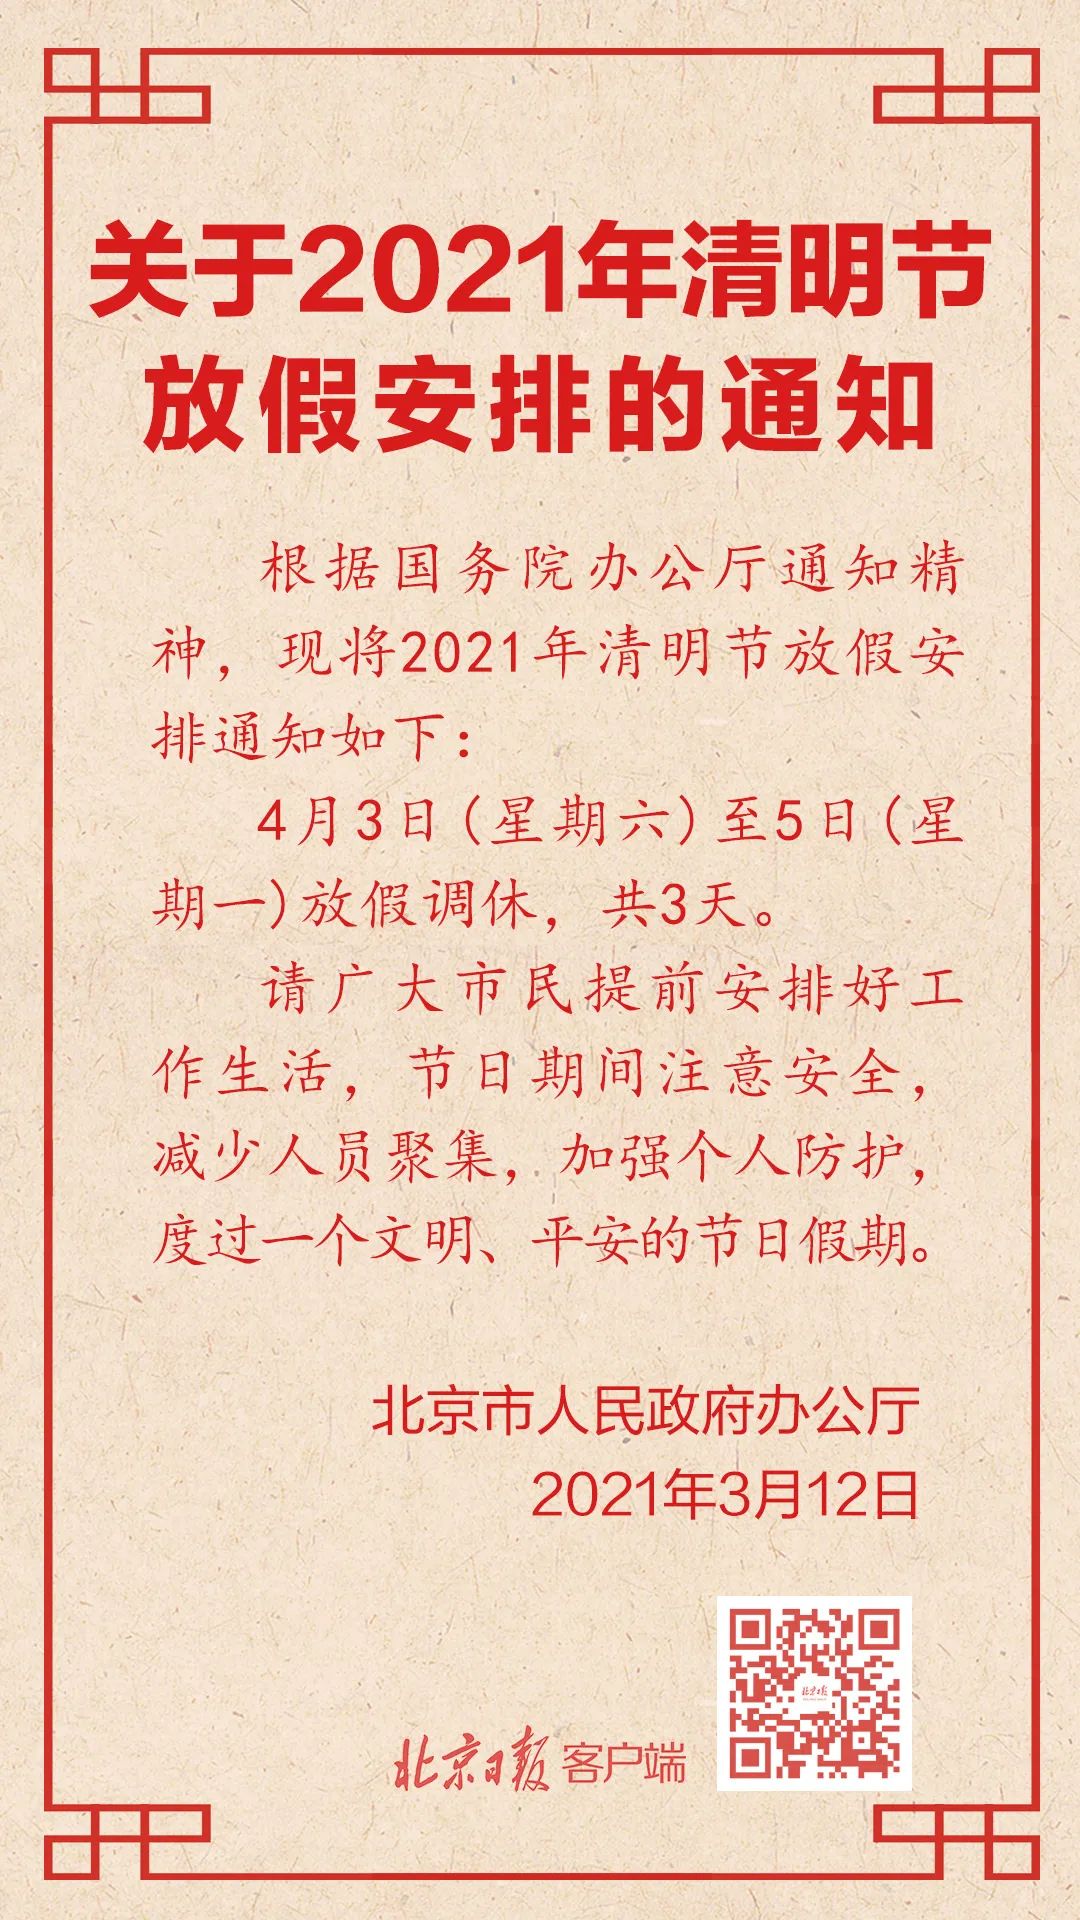 北京正式发布清明节放假通知 3天 大军事网